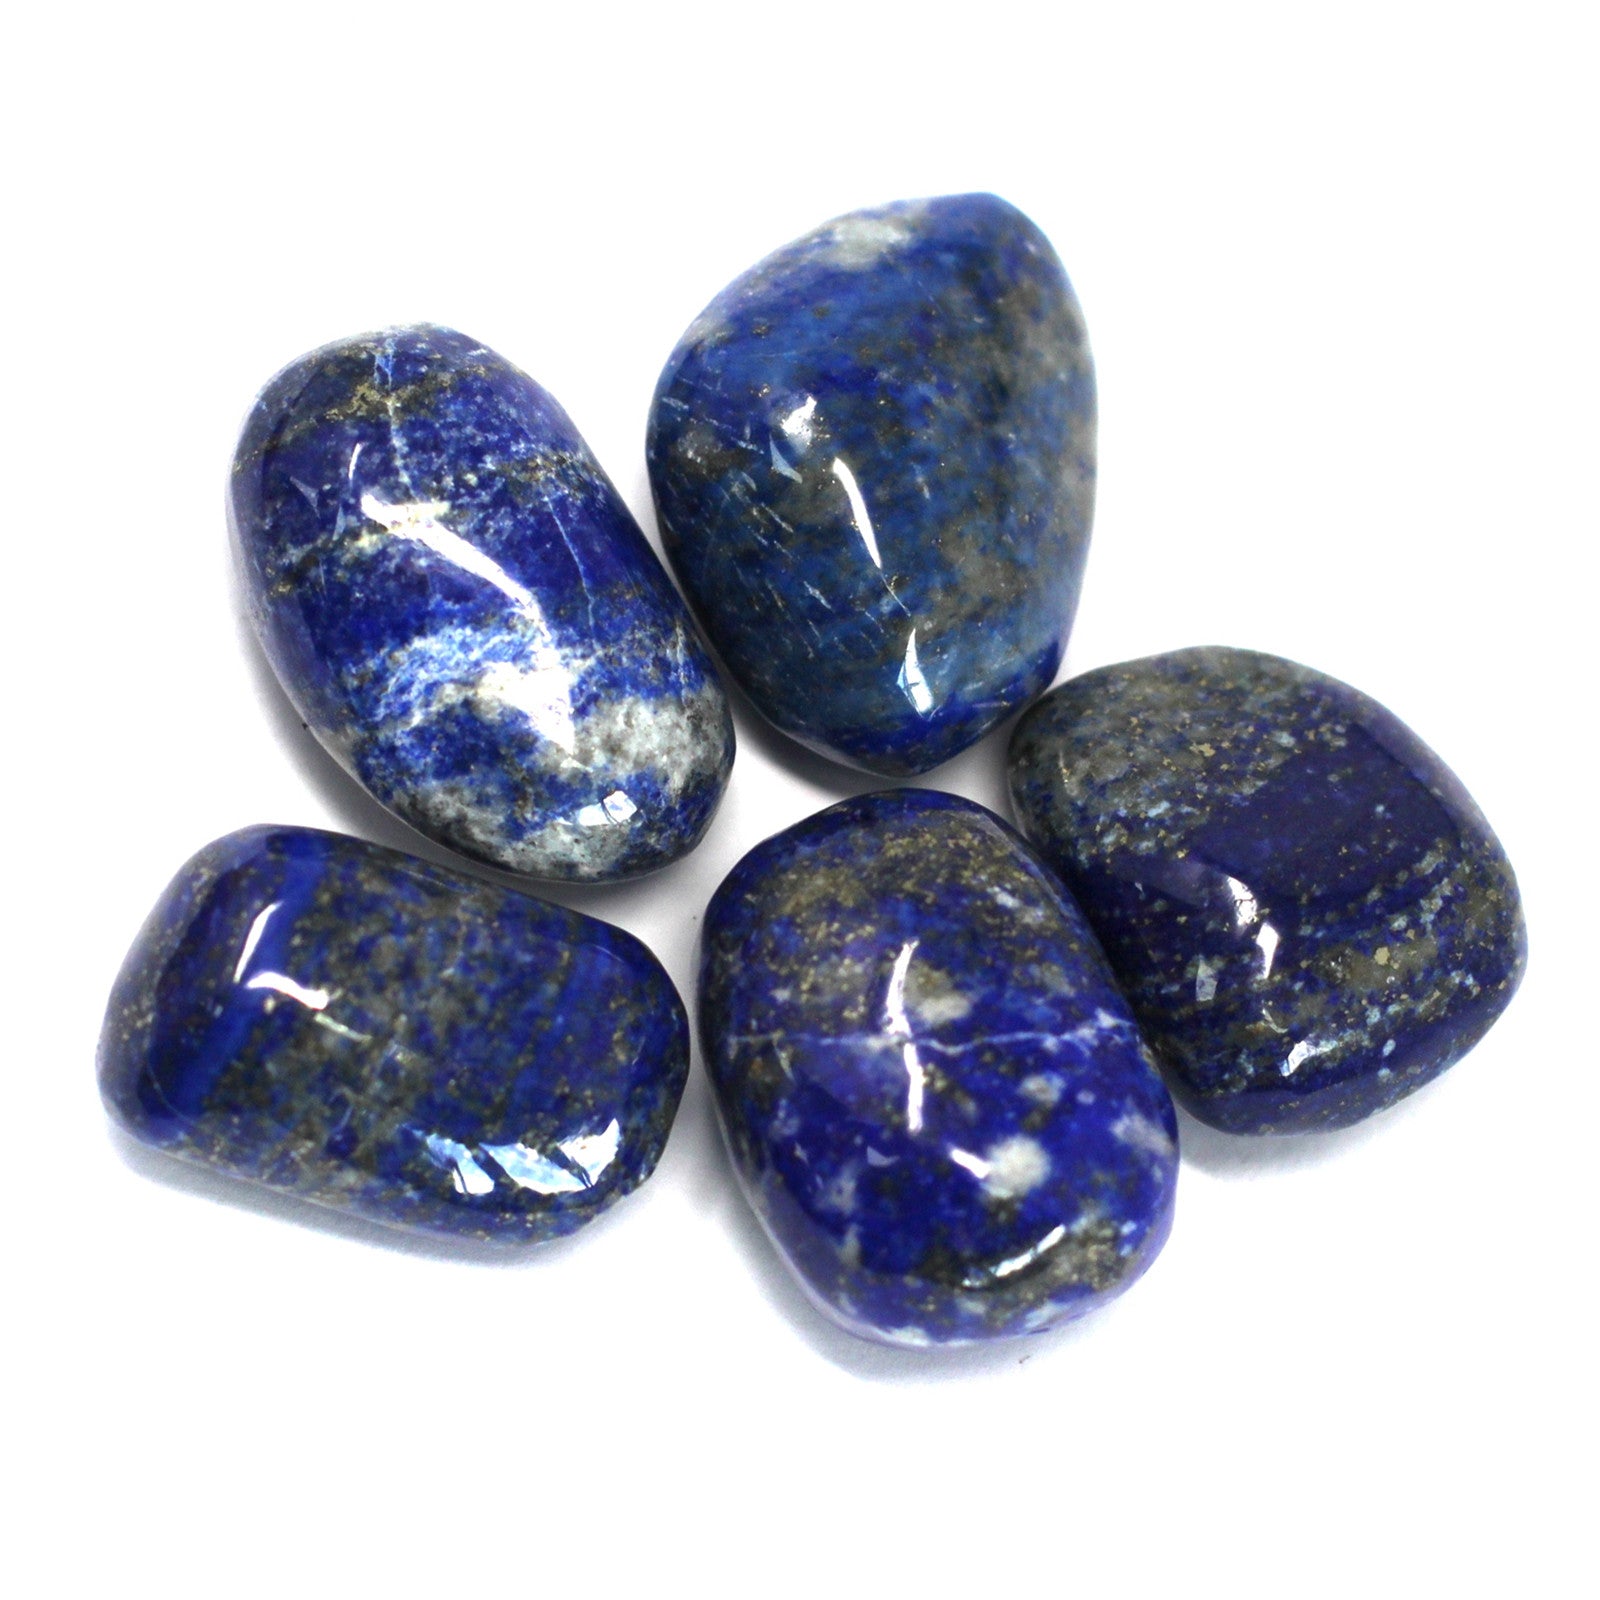 Premium Tumble Stone - Lapis